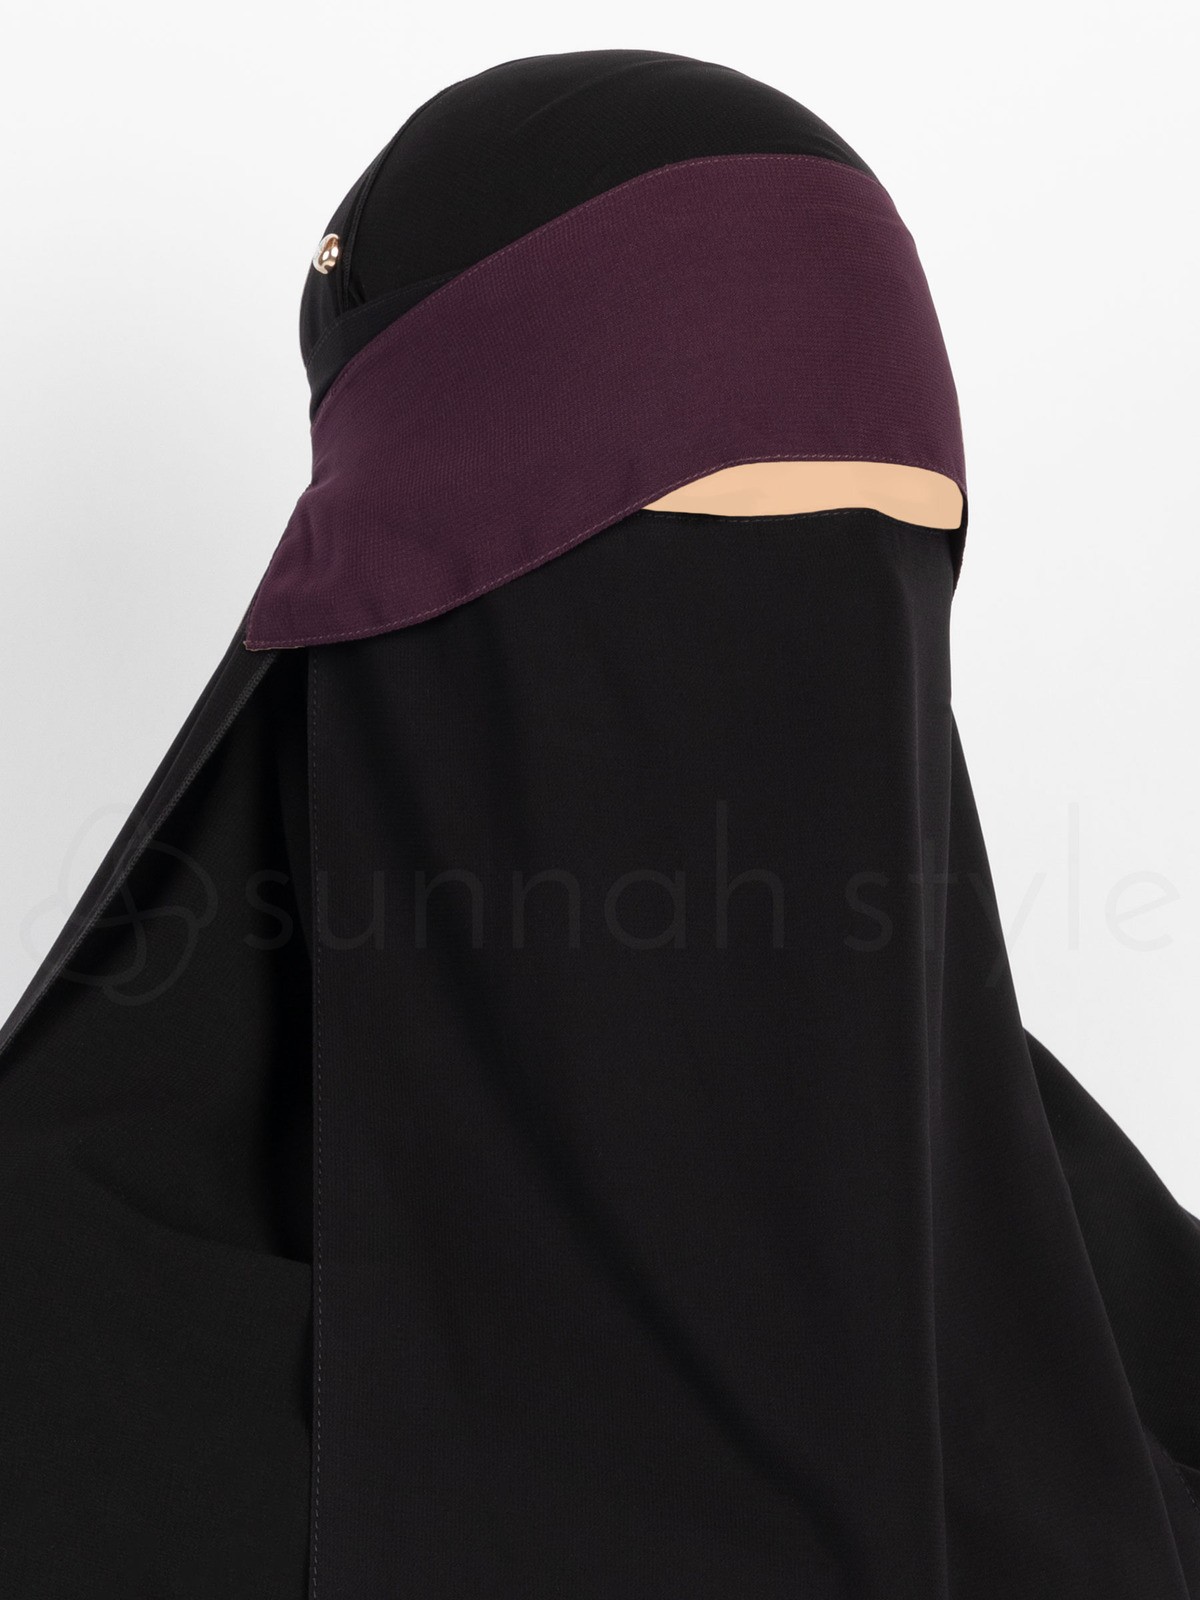 Sunnah Style - Adjustable Niqab Flap (Eggplant)